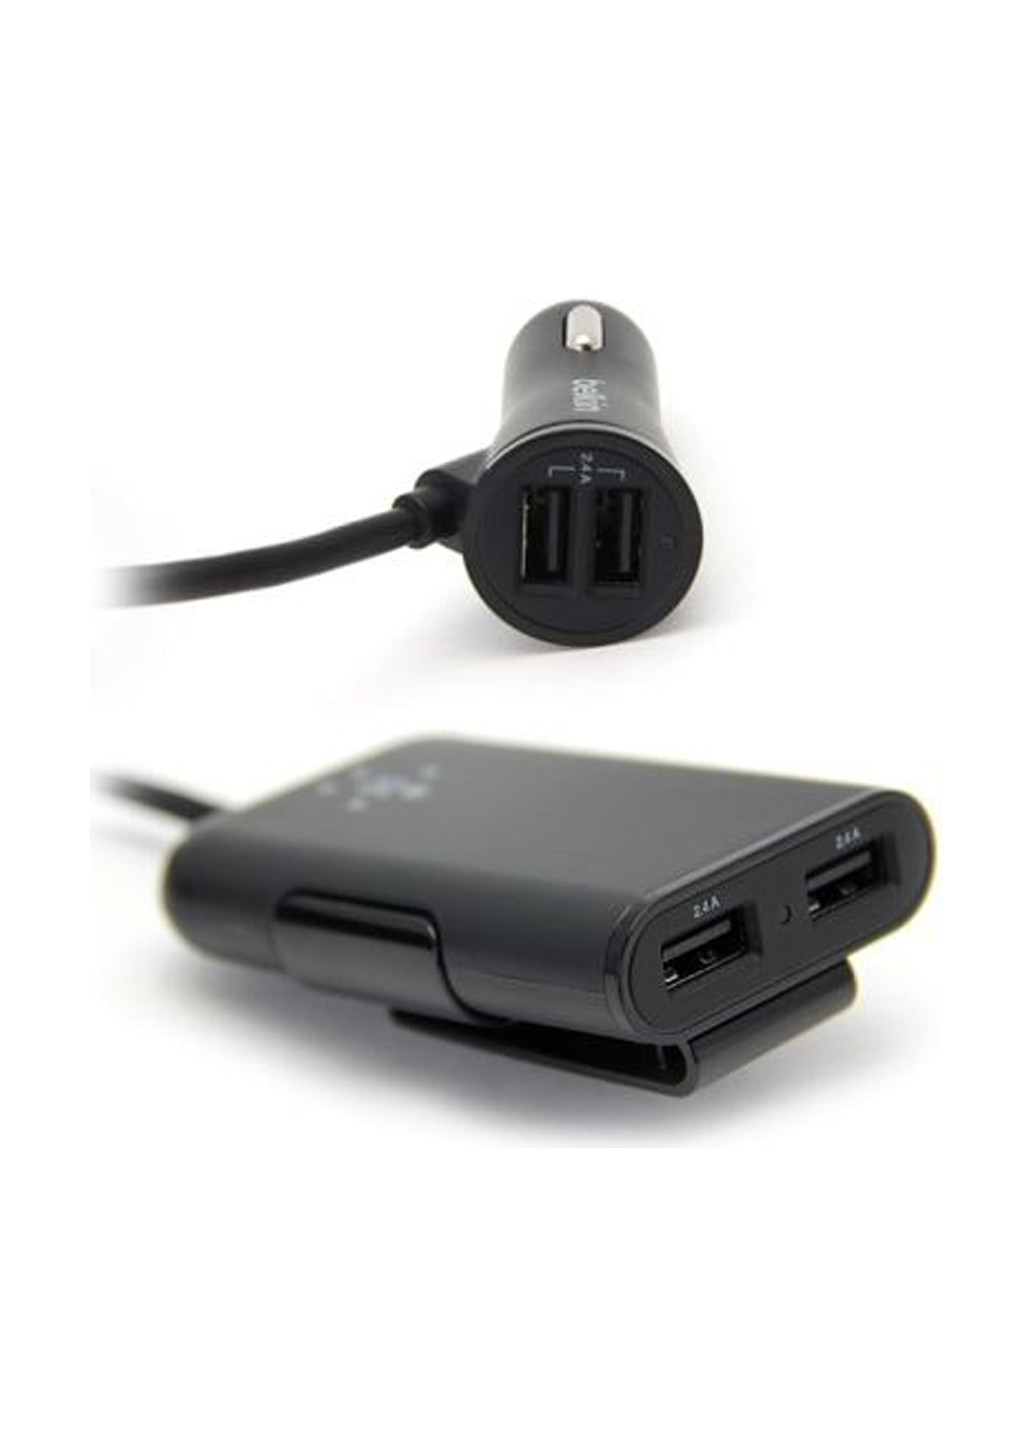 Автомобільне ЗУ Road Rockstar USB Charger (2 USB x 2.4Amp + 2 USB x 1.2Amp), чорний (F8M935bt06-BLK) Belkin road rockstar usb charger (2 usb x 2.4amp + 2 usb x 1.2amp), черный (f8m935bt06-blk) (137882422)